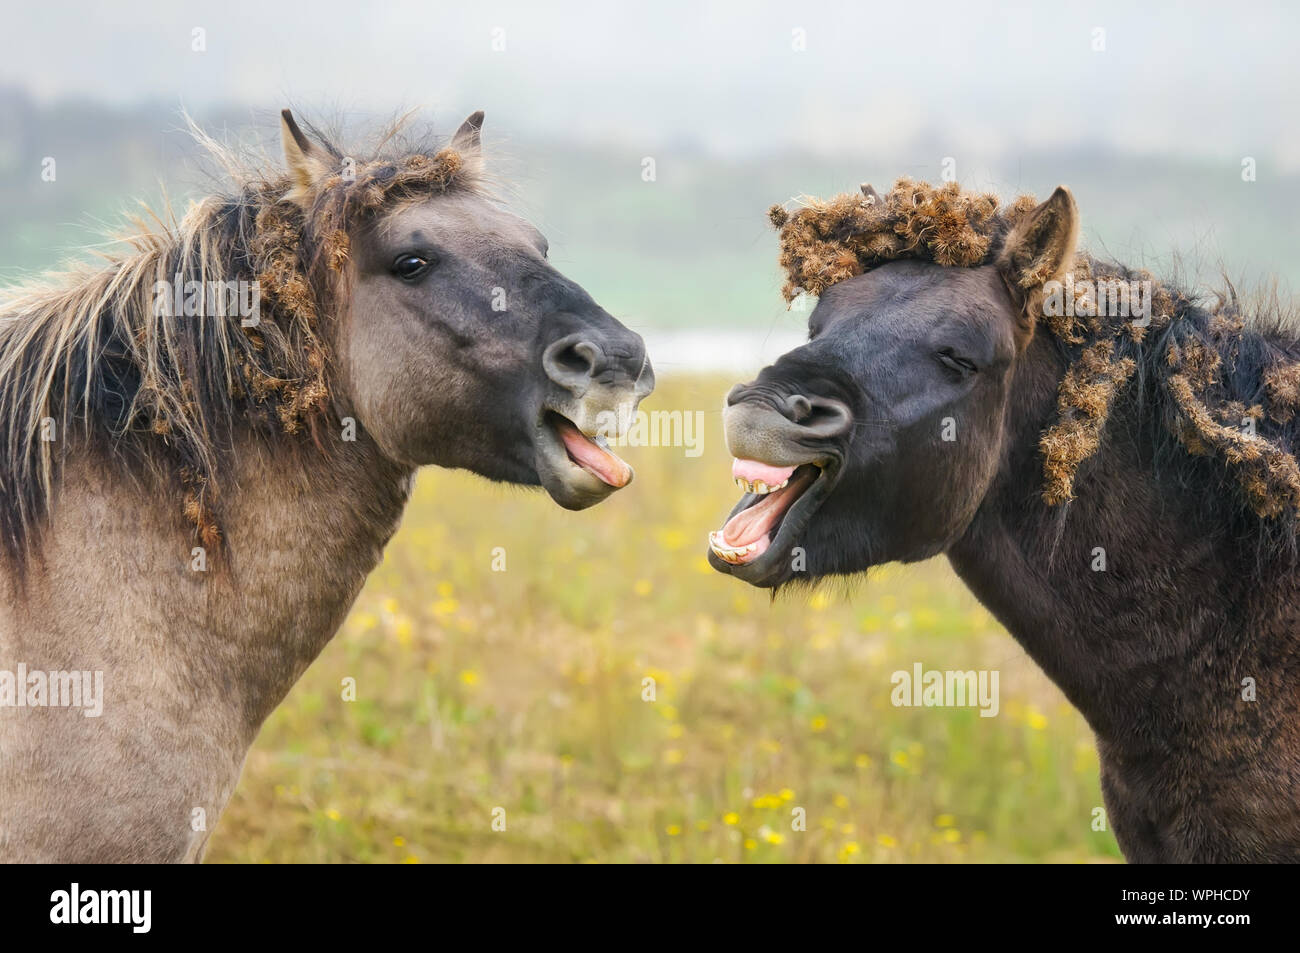 Zwei wilde Konik Pferde gähnen, sieht aus wie Sprechen und Lachen, Grate von Klette gefüllt forelock und Mähne, Naturschutzgebiet Millingerwaard, Niederlande Stockfoto